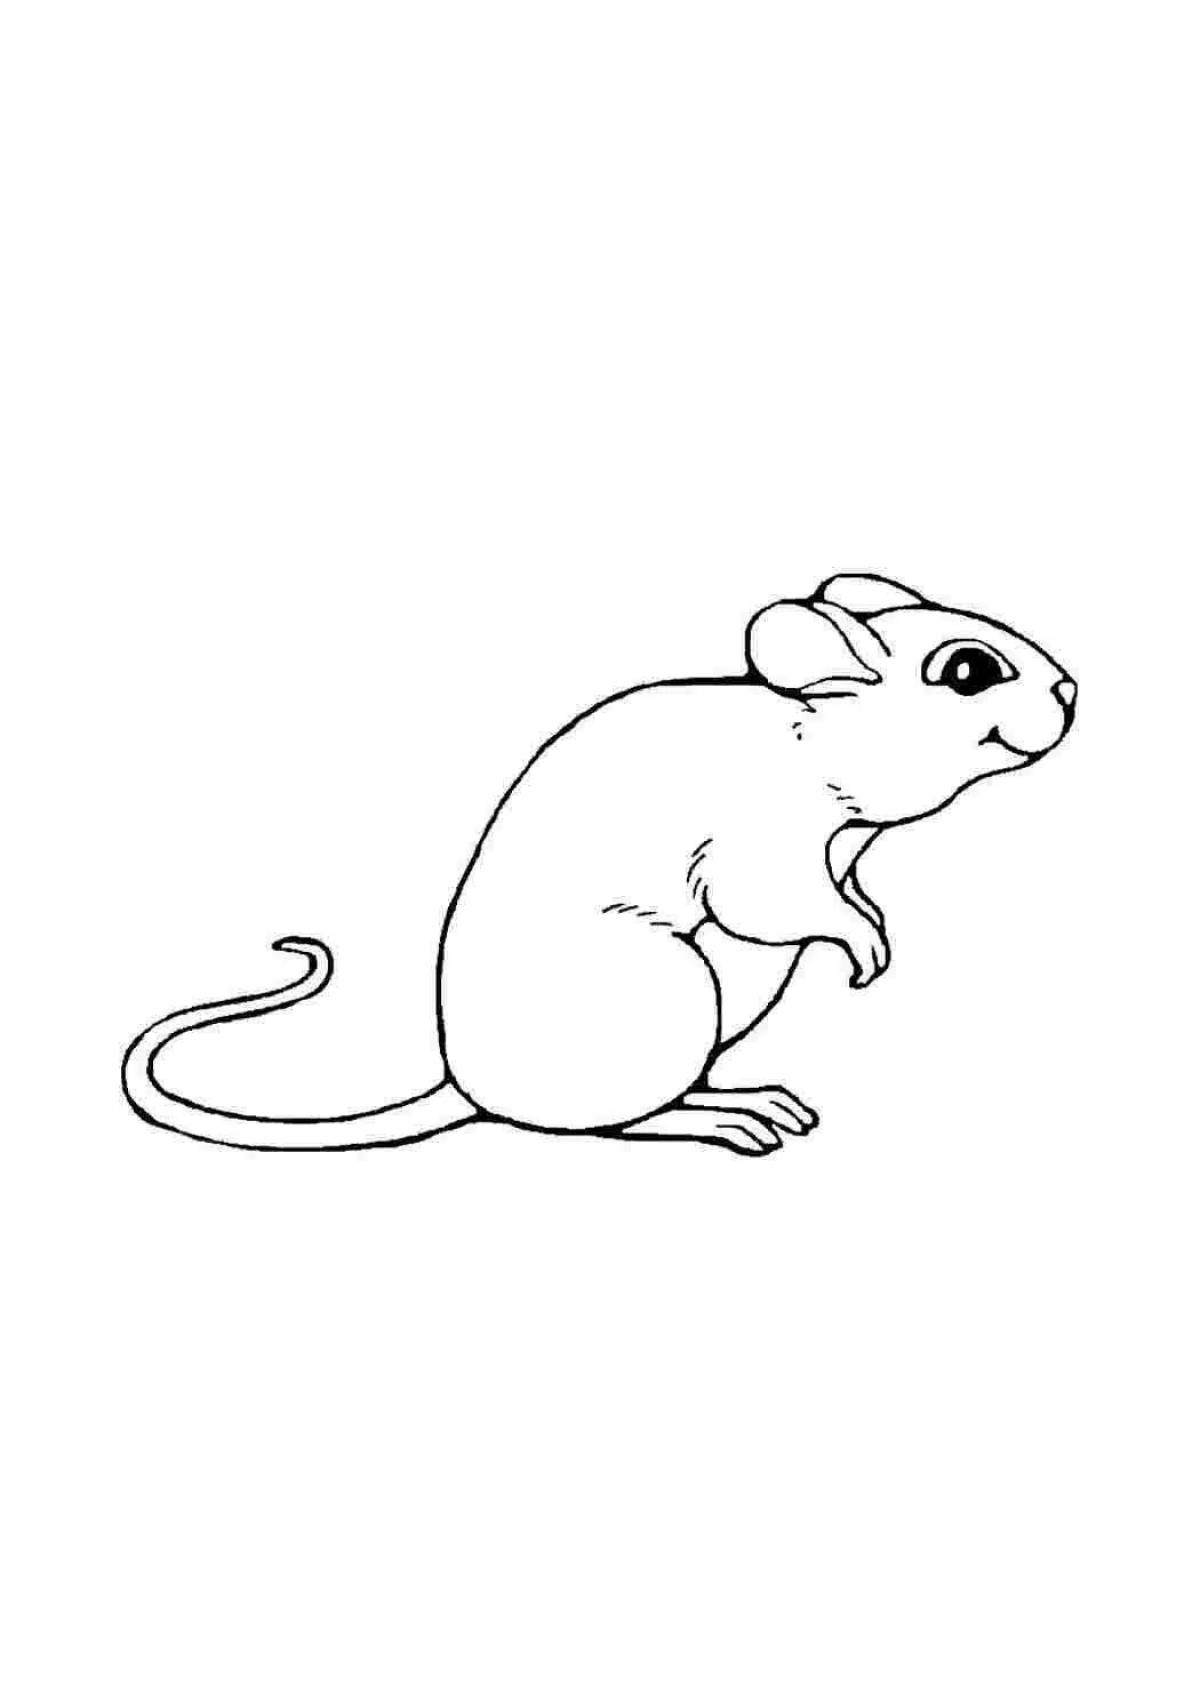 Раскраска мышь распечатать. Раскраска мышка. Мышь раскраска для малышей. Раскраска мышонок. Мышонок картинка для детей раскраска.